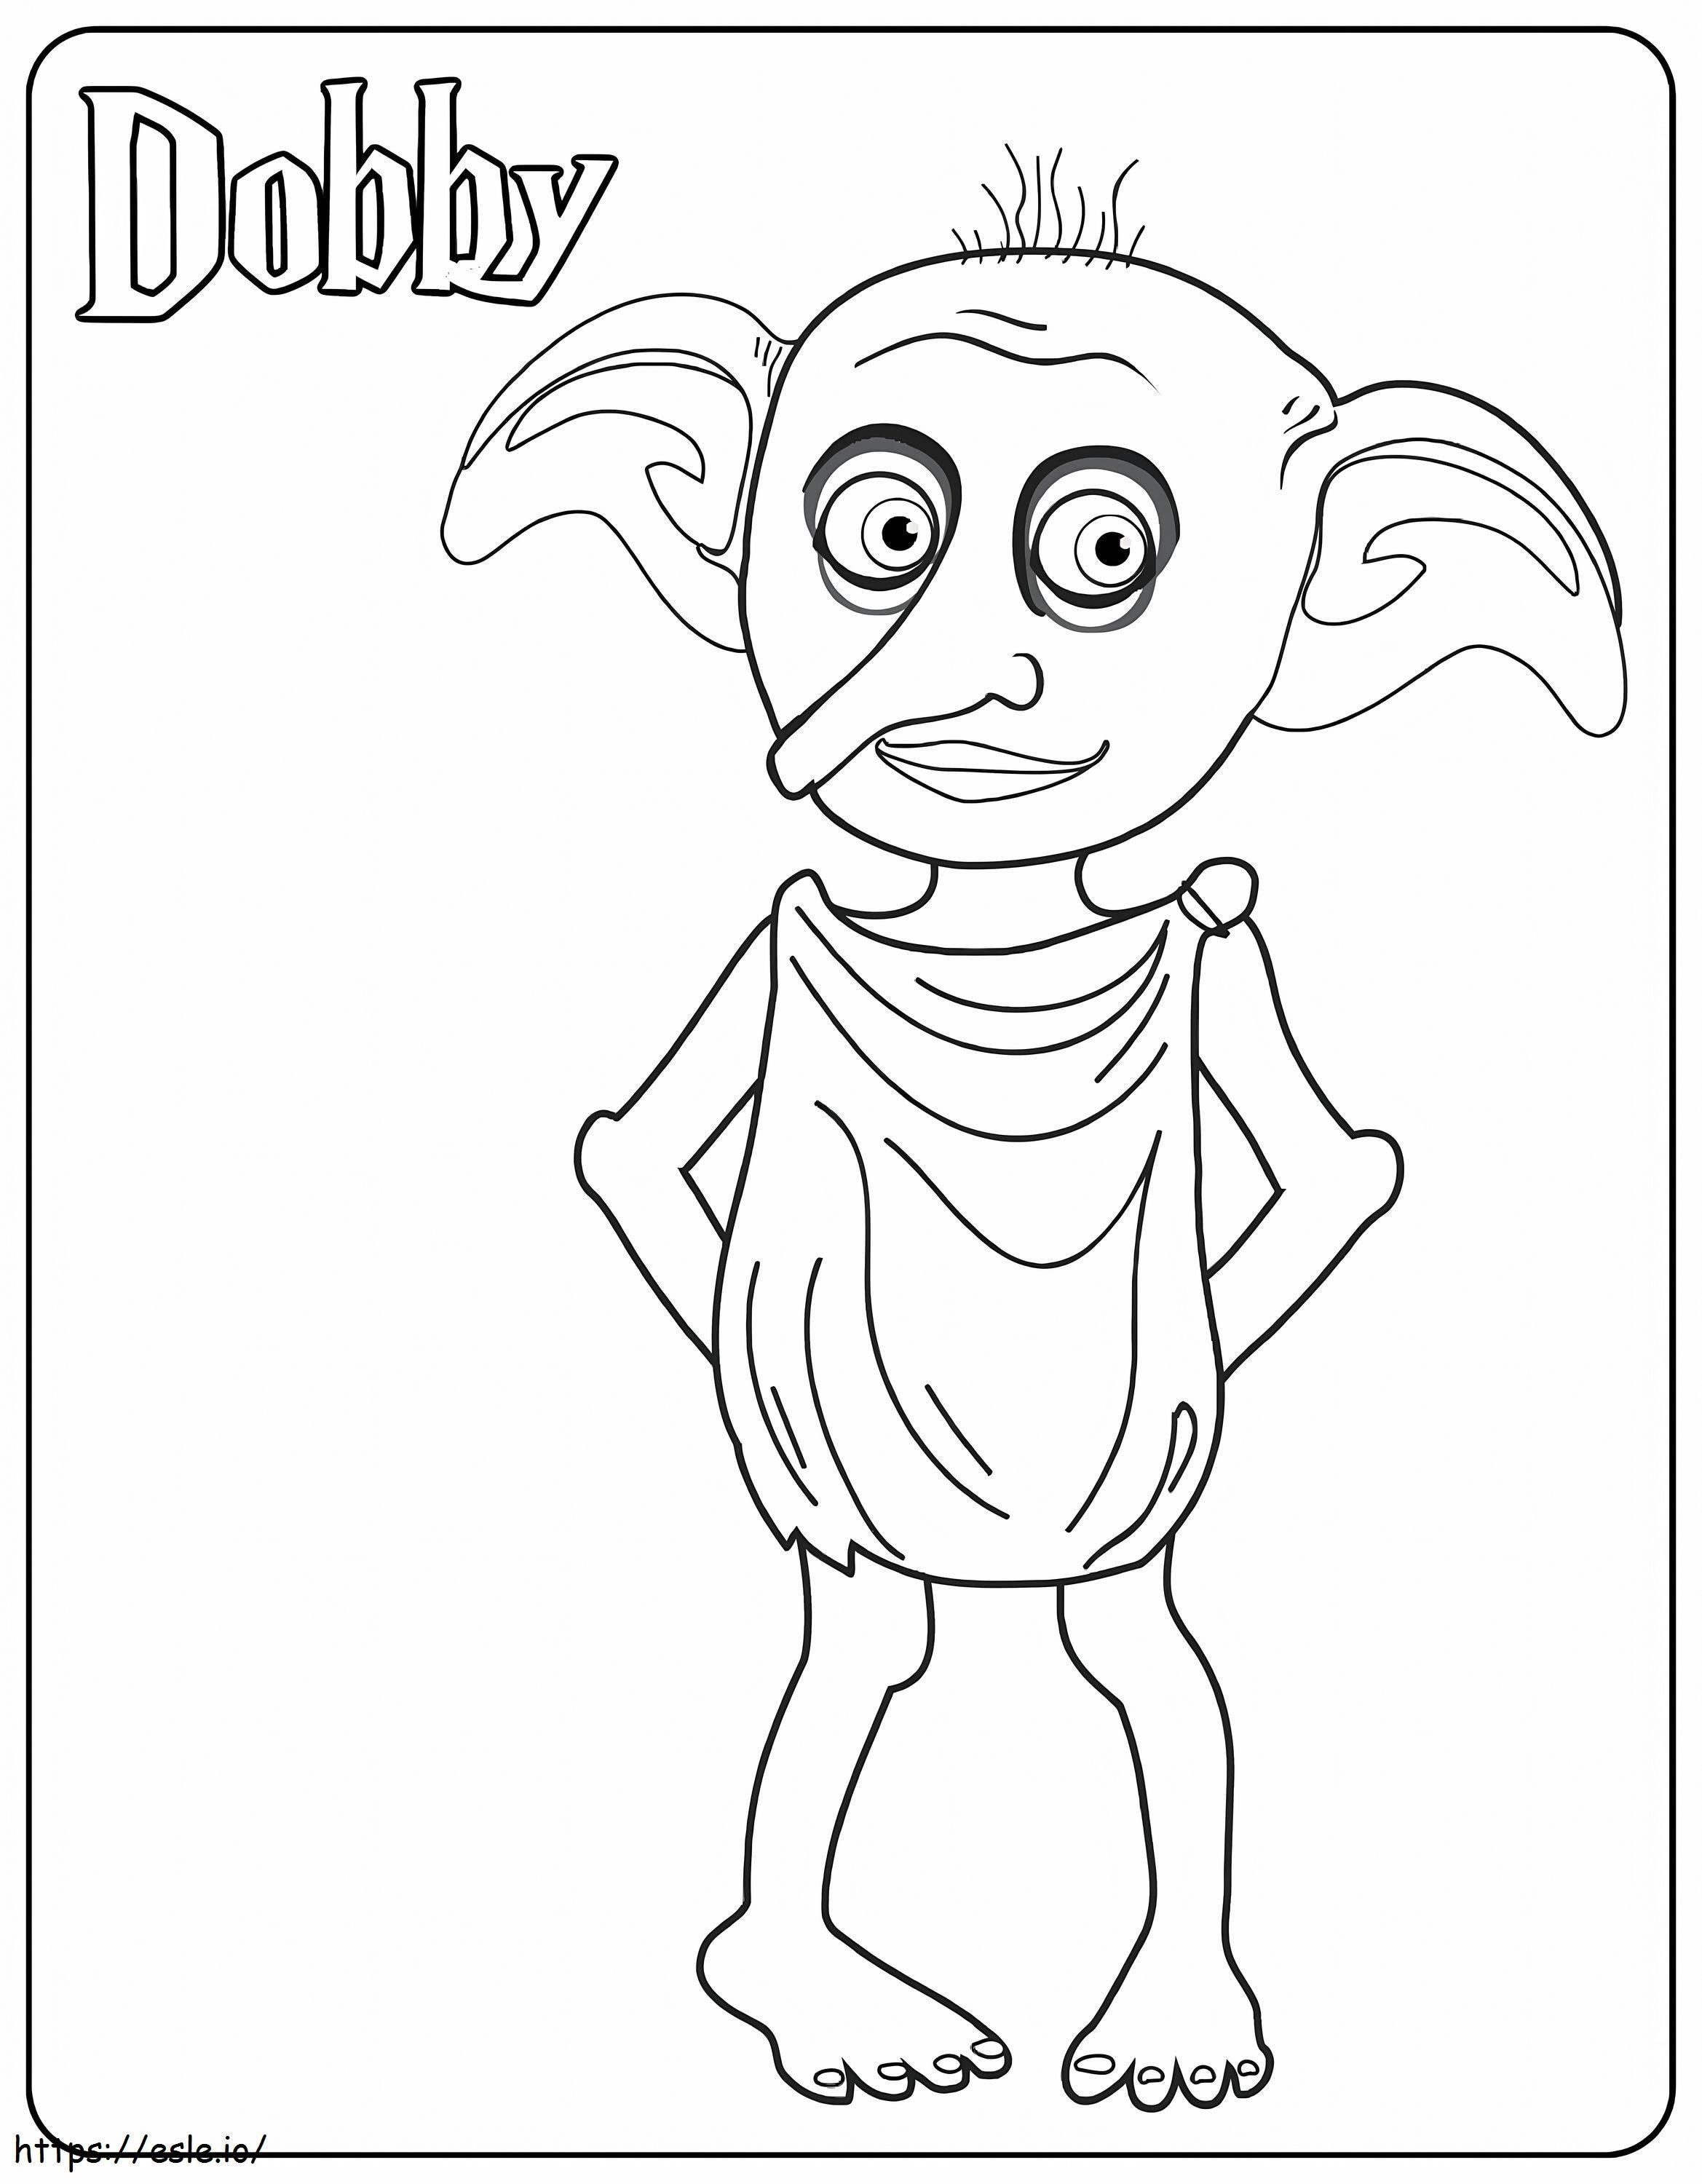 Dobby Goblin ausmalbilder